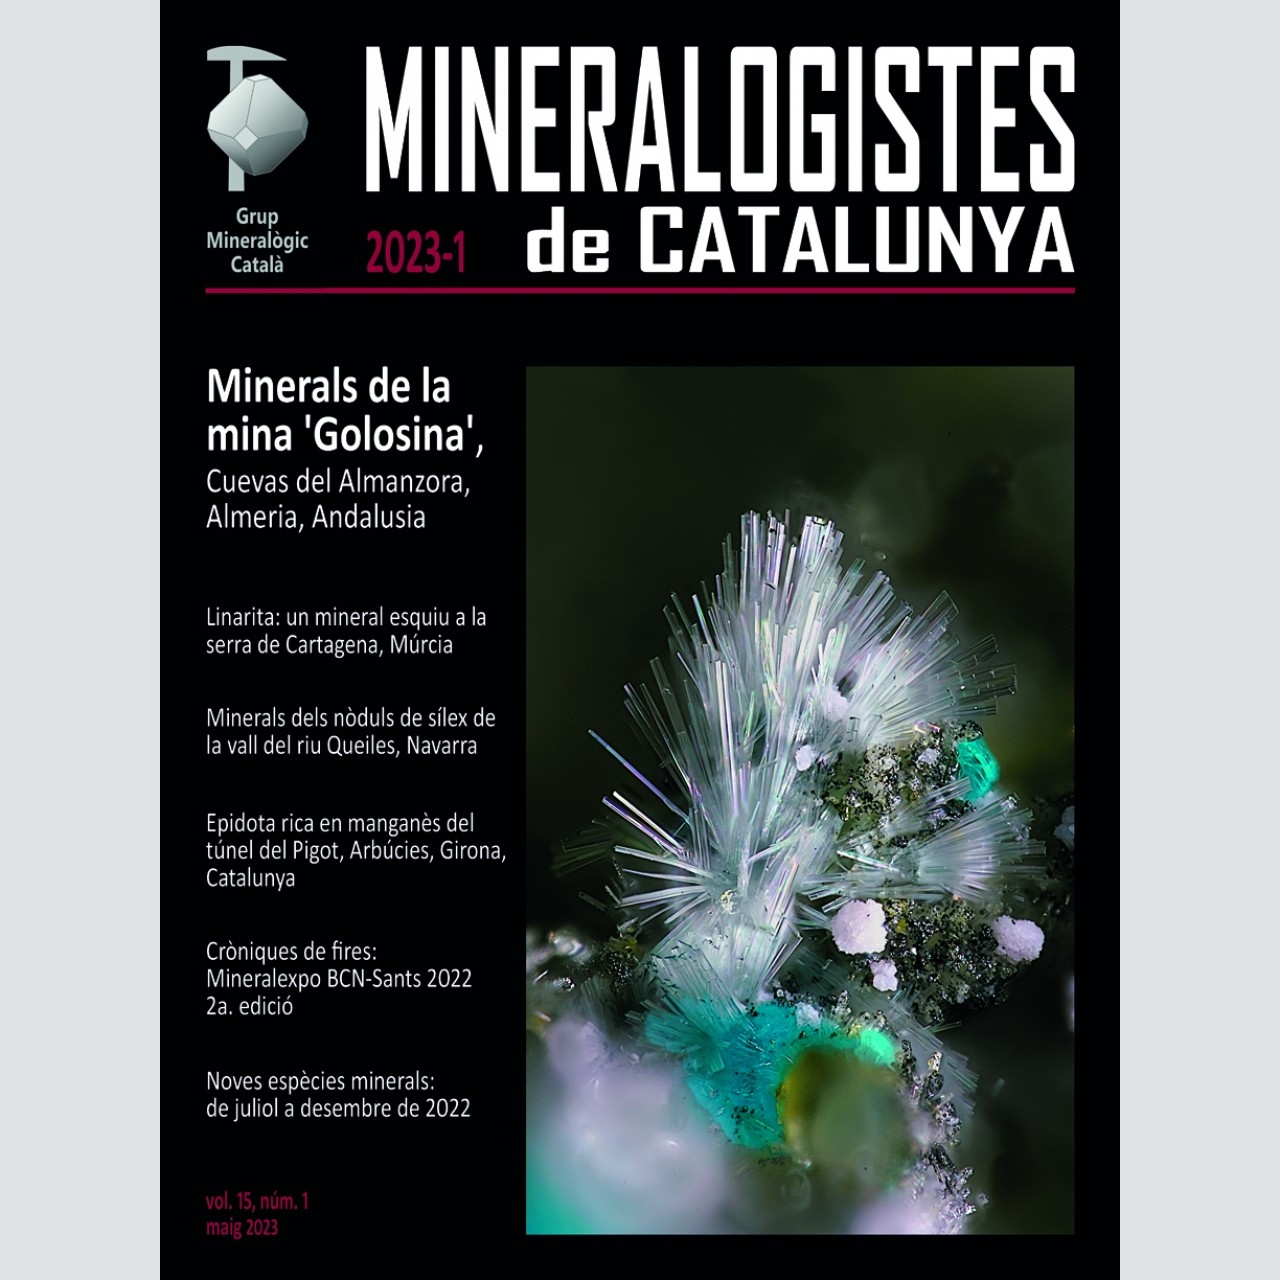 <em>Mineralogistes de Catalunya</em> (2023-1)